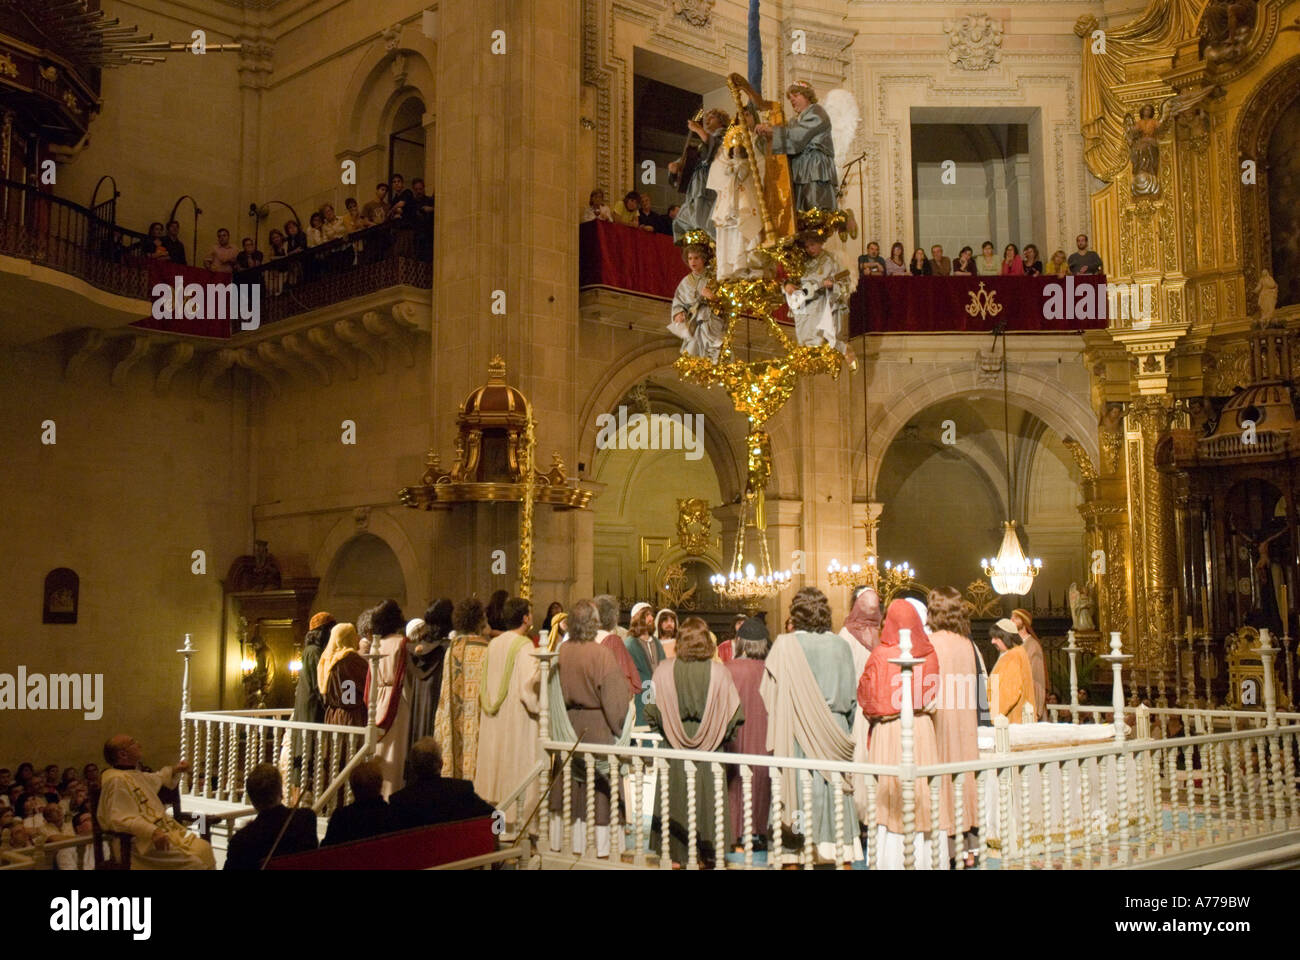 The Elche Mystery Play Santa Maria Basilica ELCHE Alicante province Valencia Autonomous Community Spain Stock Photo